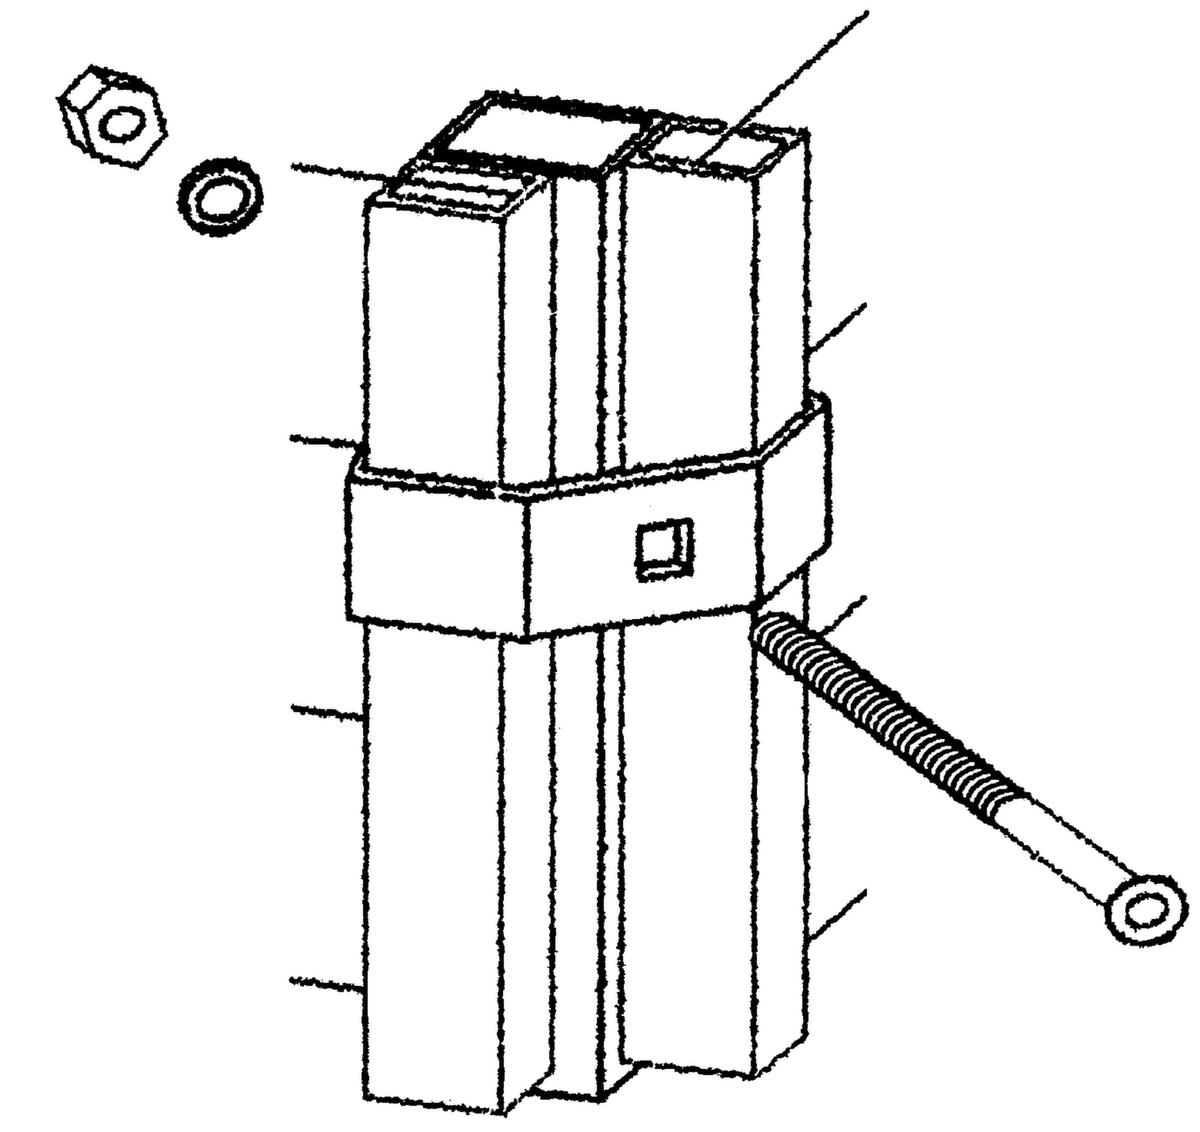 Trennwandsystem mit Maschenweite 40x40 mm Technische Zeichnung 2 ZOOM